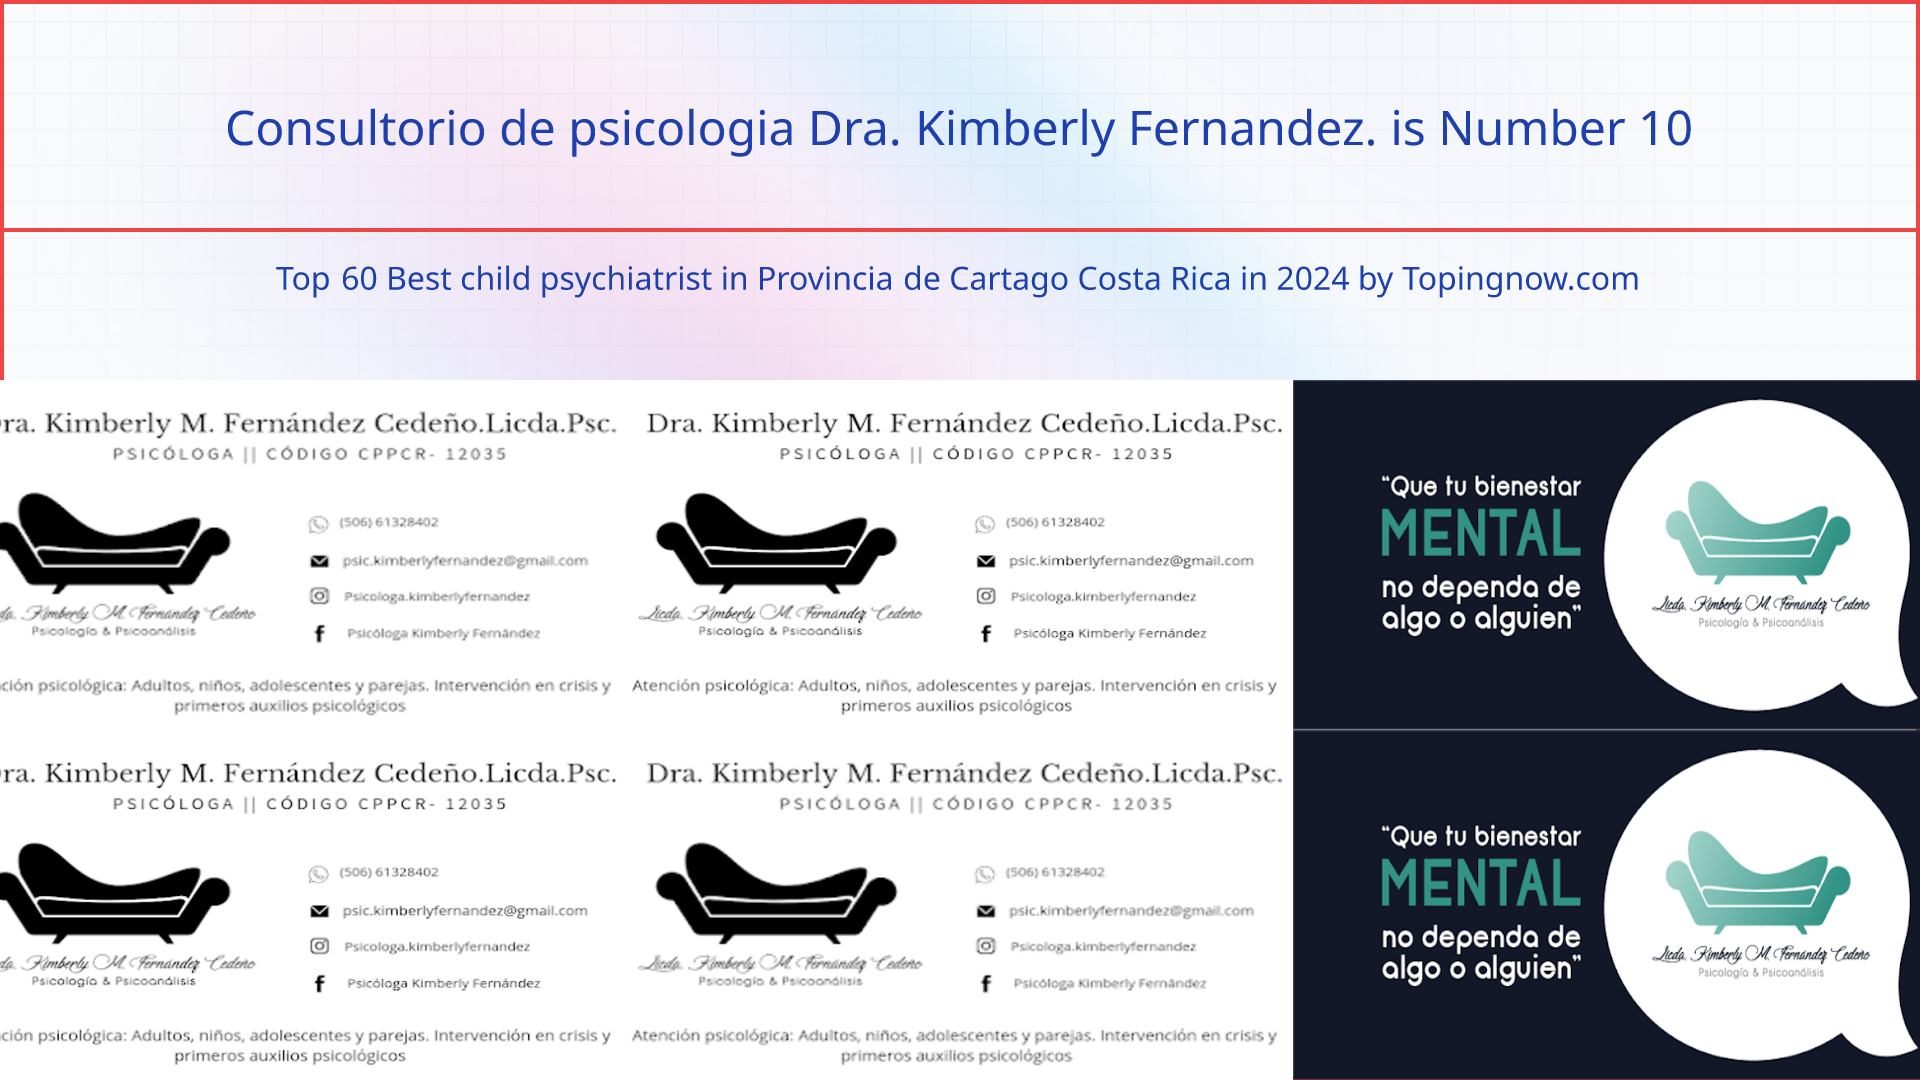 Consultorio de psicologia Dra. Kimberly Fernandez.: Top 60 Best child psychiatrist in Provincia de Cartago Costa Rica in 2024